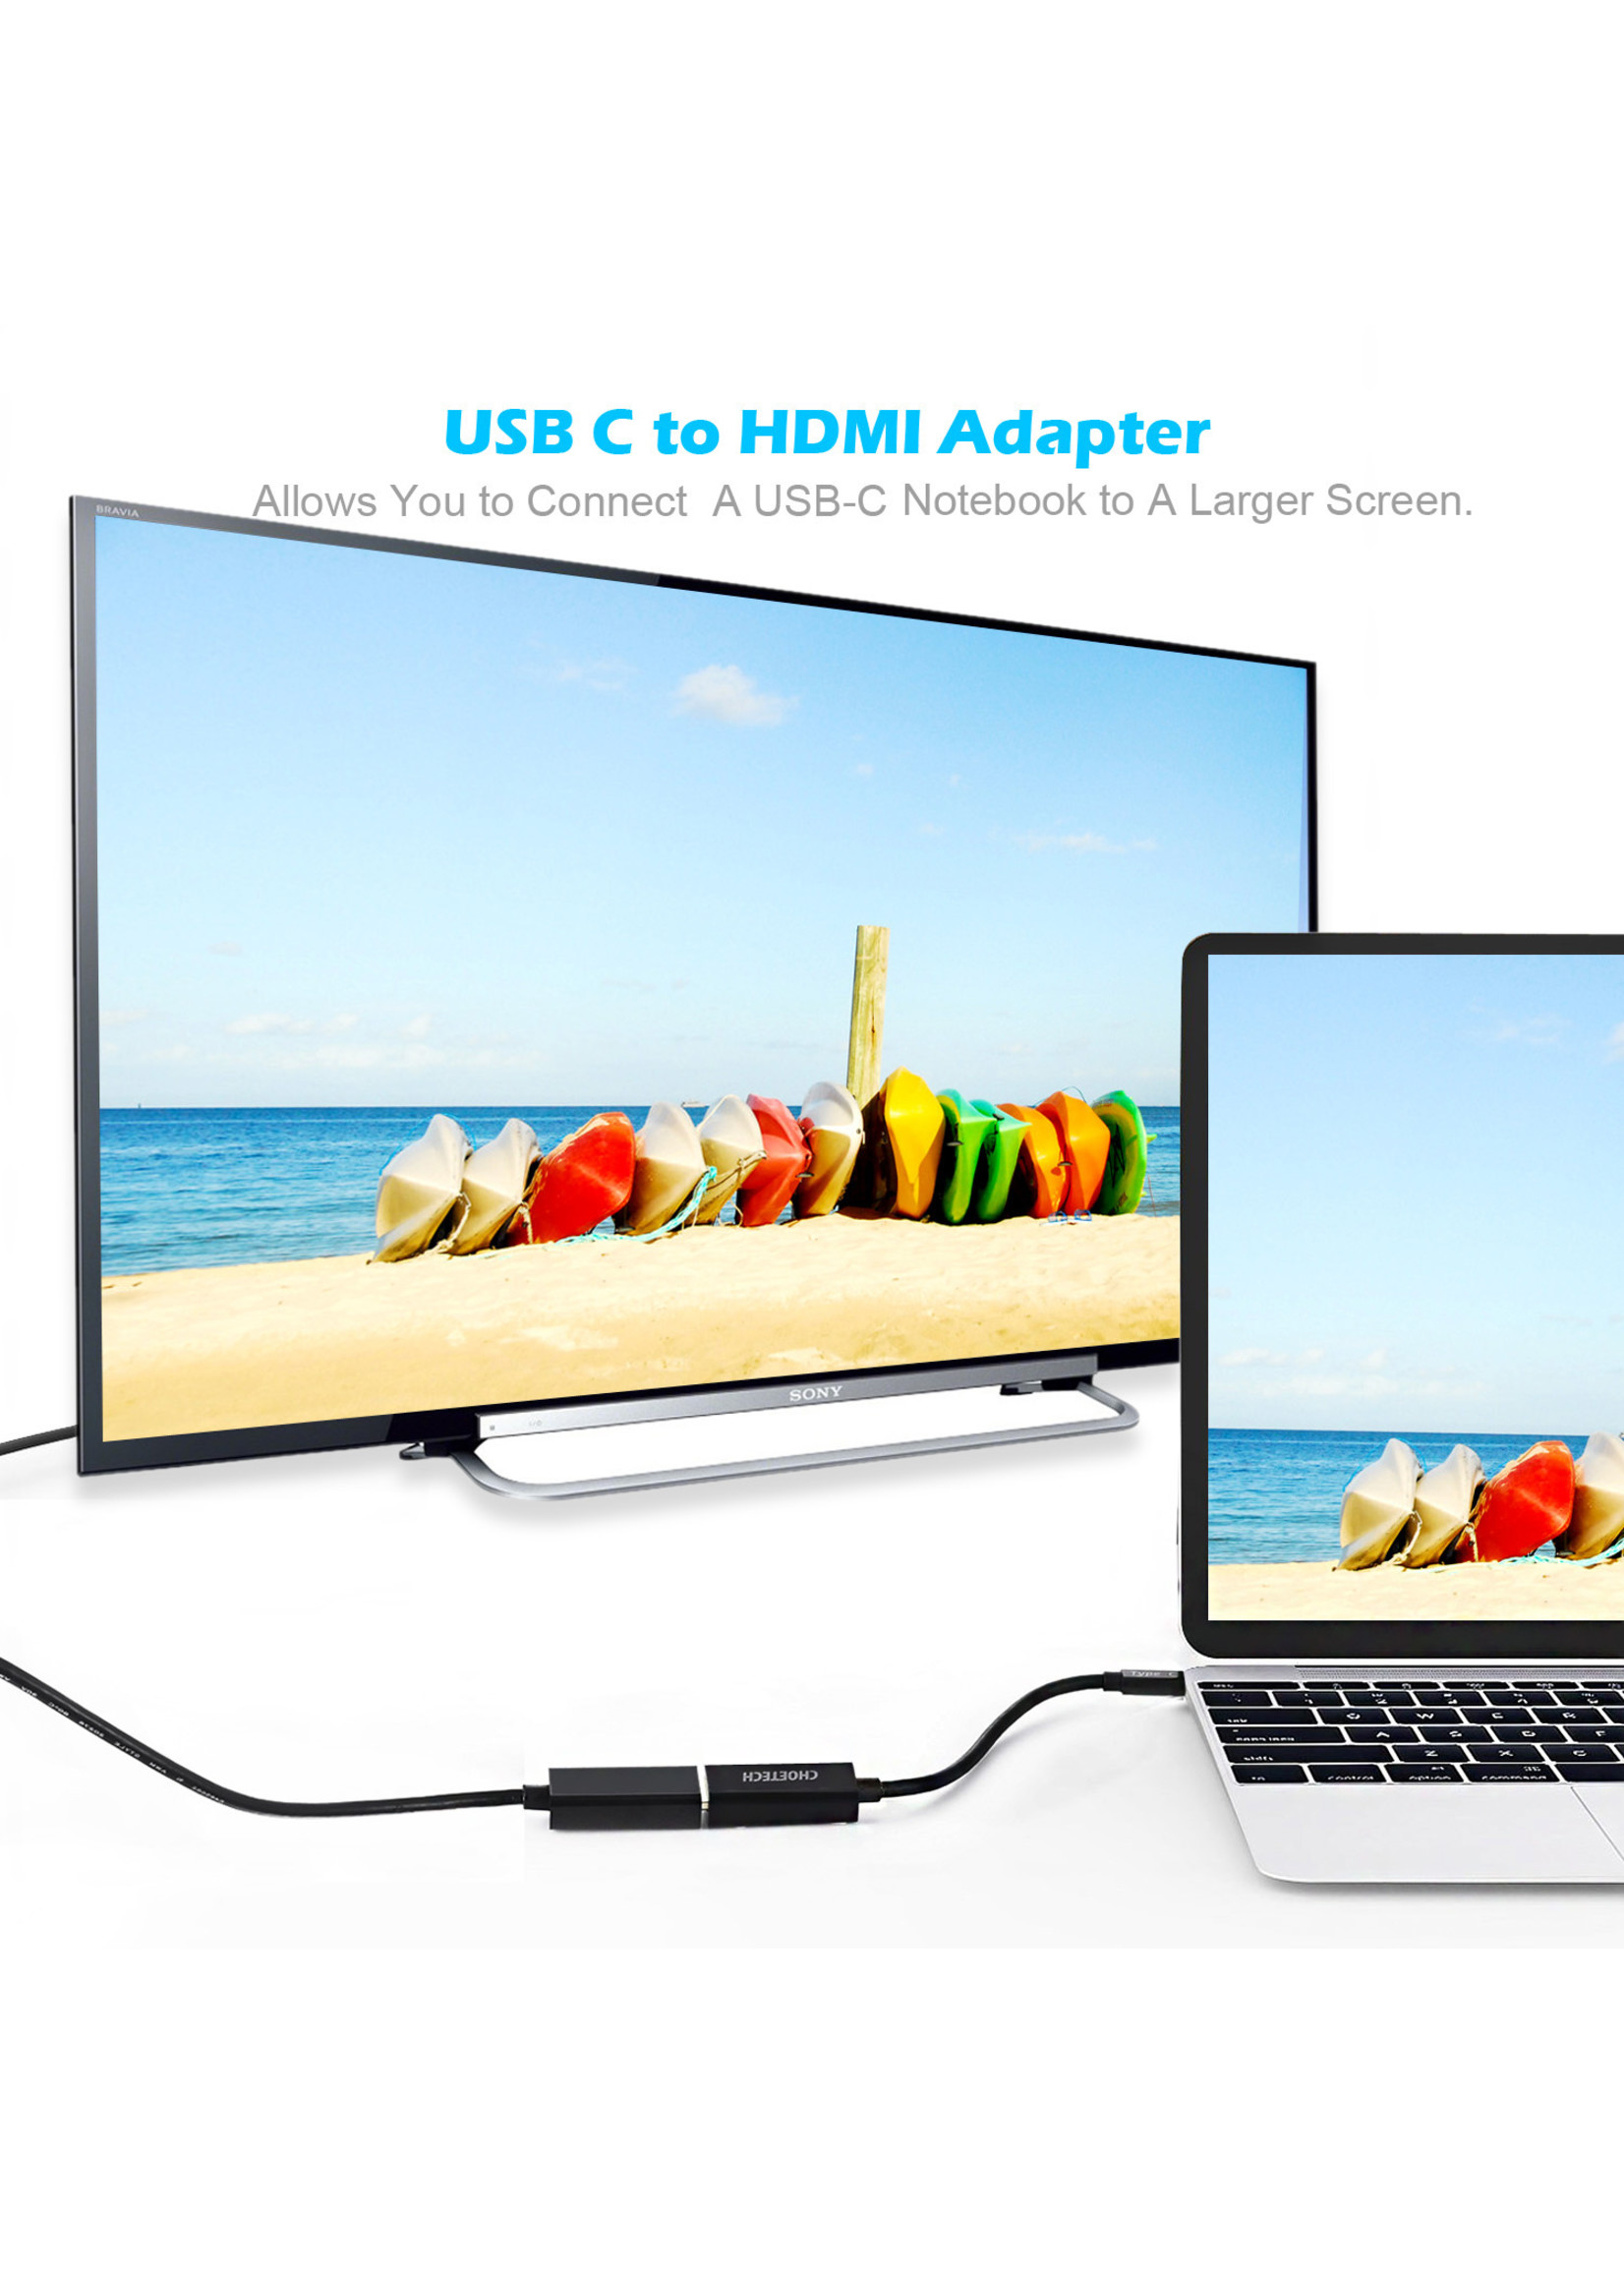 Choetech USB-C naar HDMI adapter met metalen behuizing - 4K resolutie - 15CM kabel - Zwart